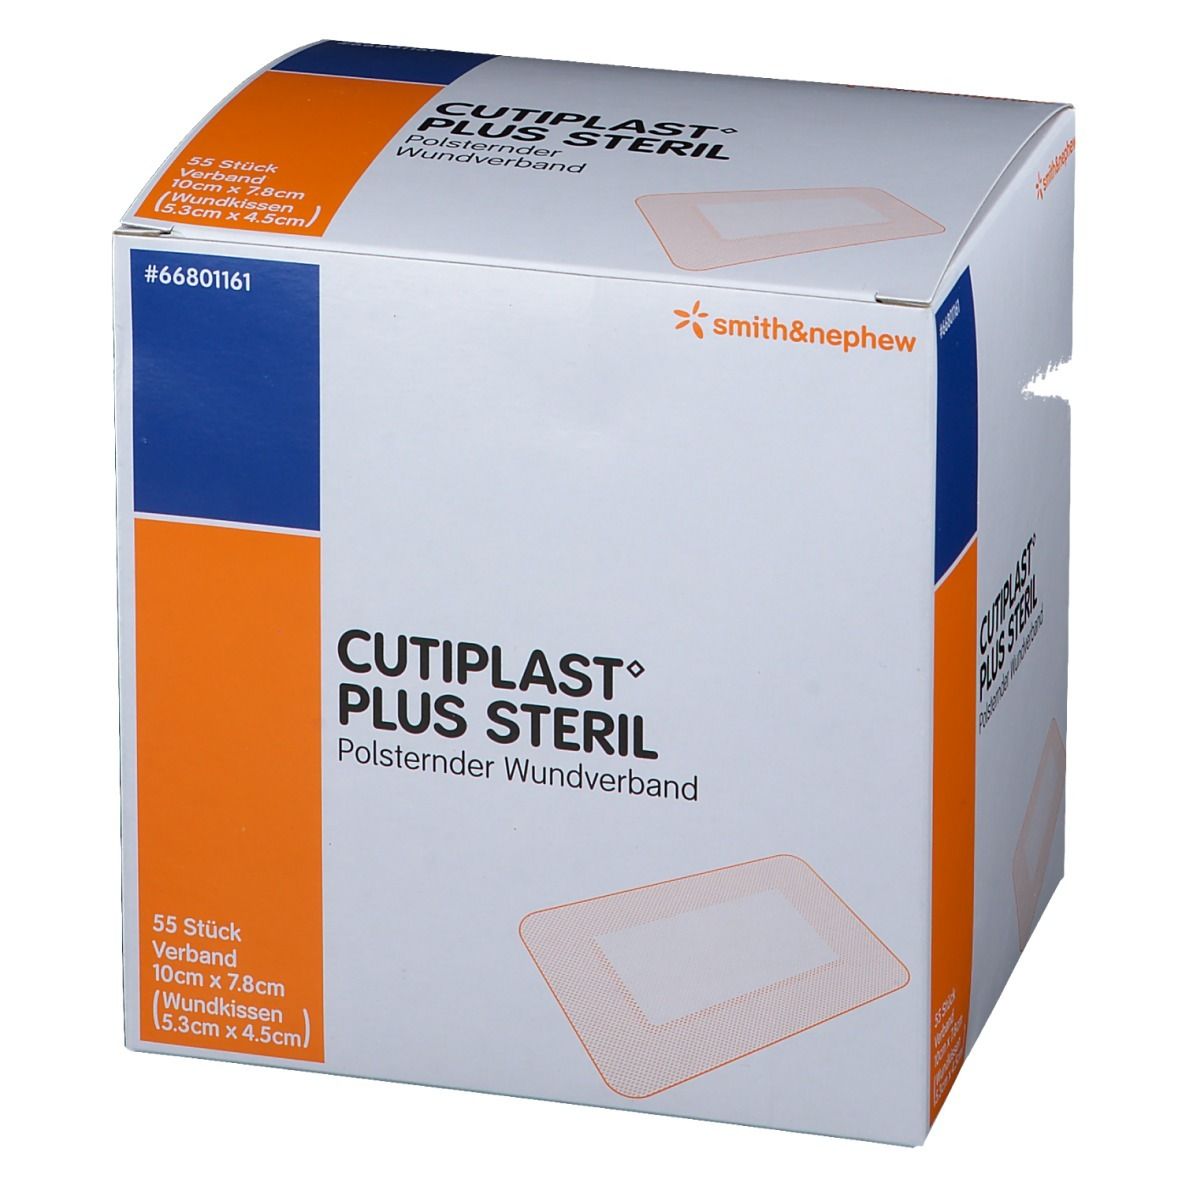 CUTIPLAST Plus steril 10 x 7.8 cm